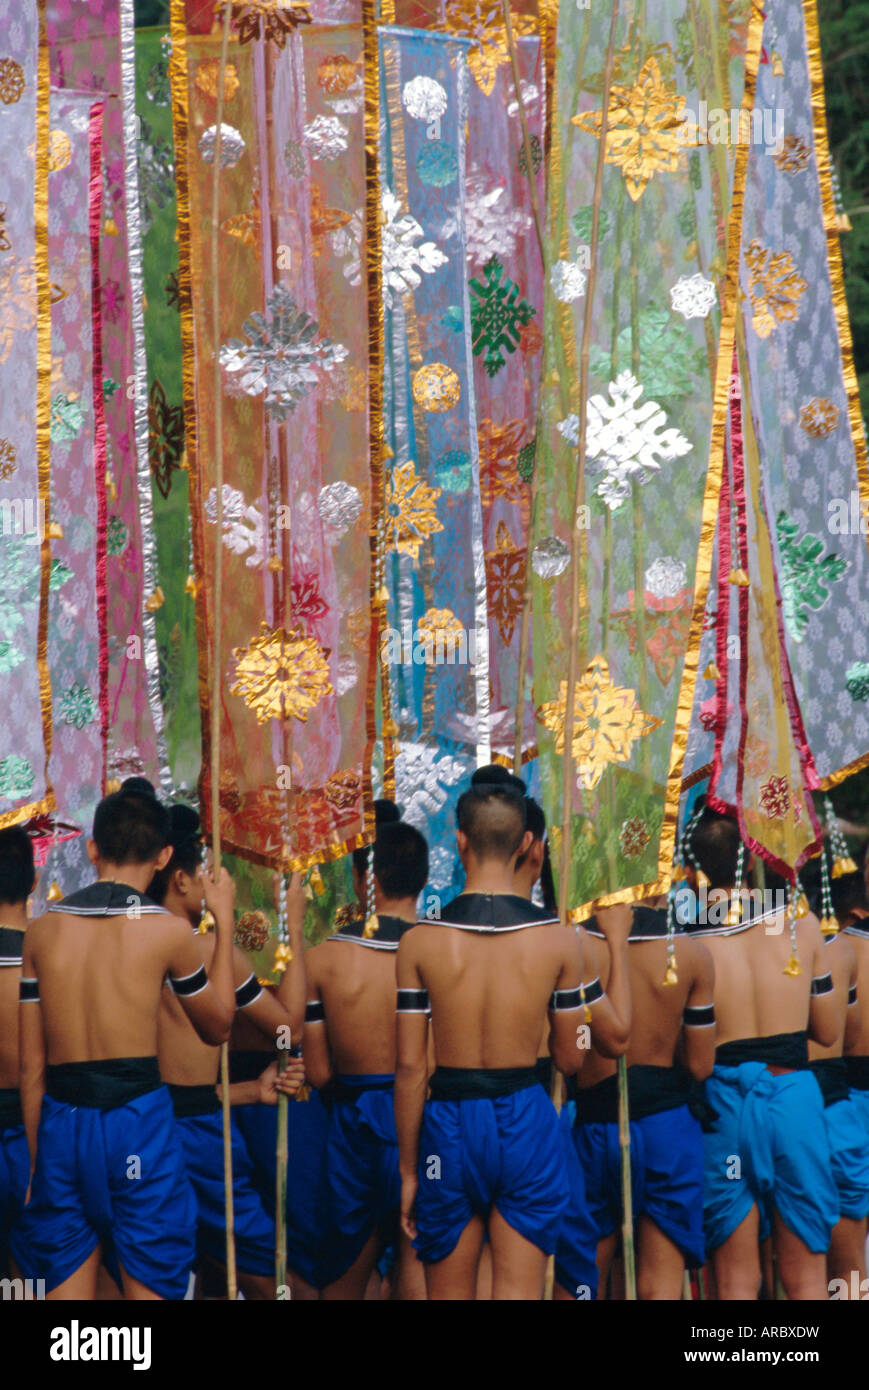 Le festival de Loy Krathong dans l'ancienne capitale de Sukhothai, Thaïlande Banque D'Images